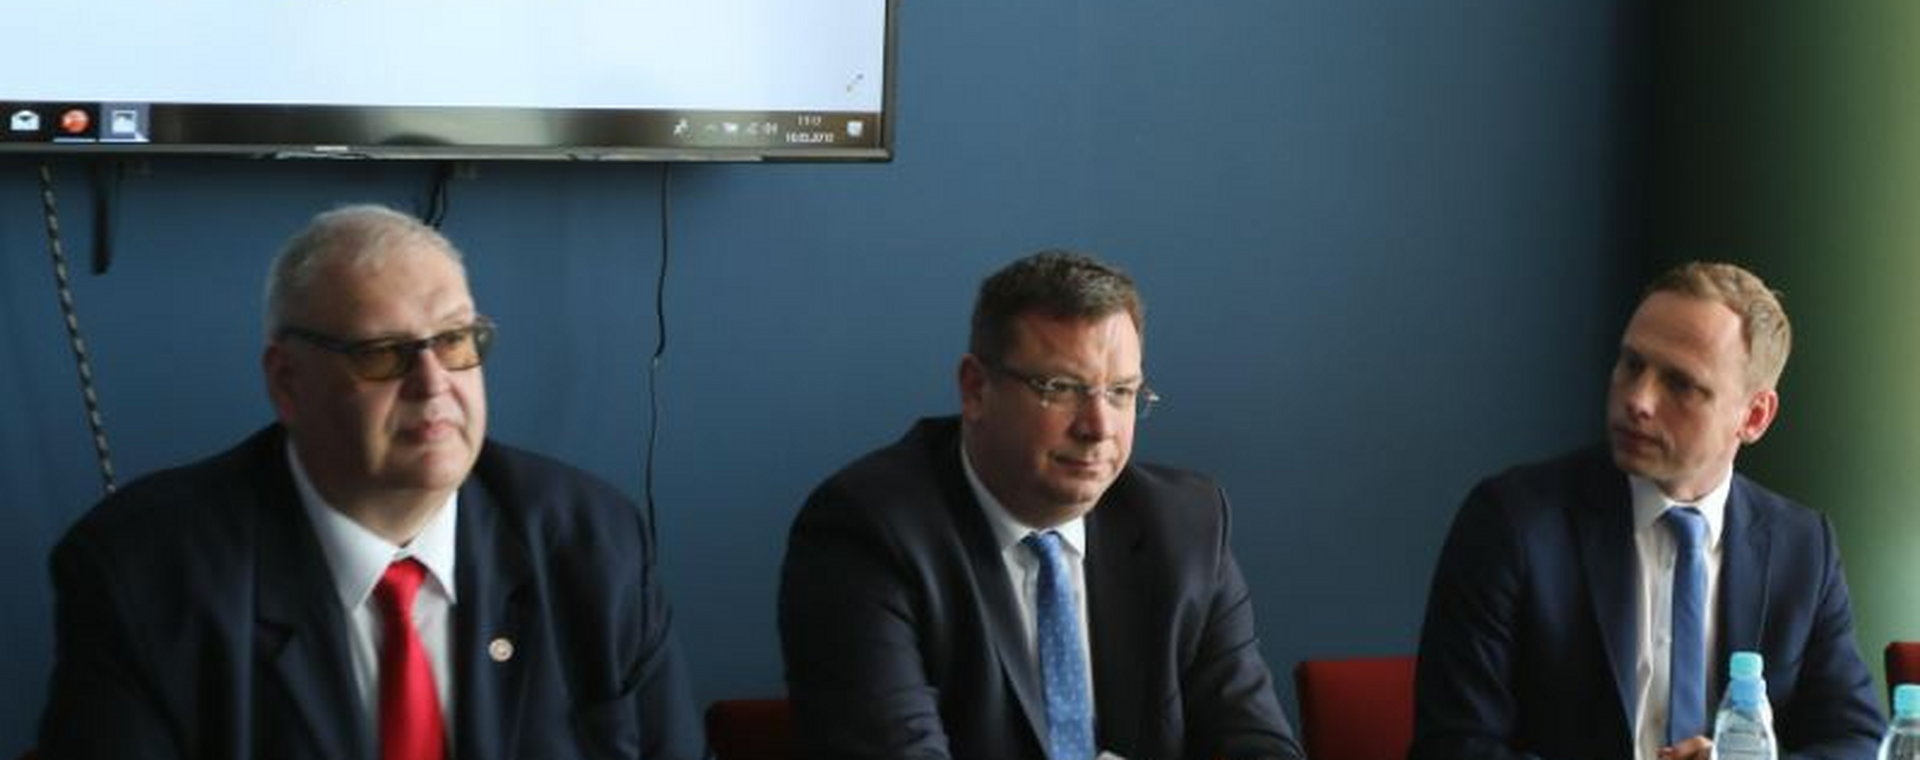 Wiceminister sprawiedliwości Michał Wójcik podczas oficjalnego otwarcia Instytutu Ekspertyz Ekonomicznych i Finansowych w 2019 r. Cztery lata później NIK krytykuje IEEF.